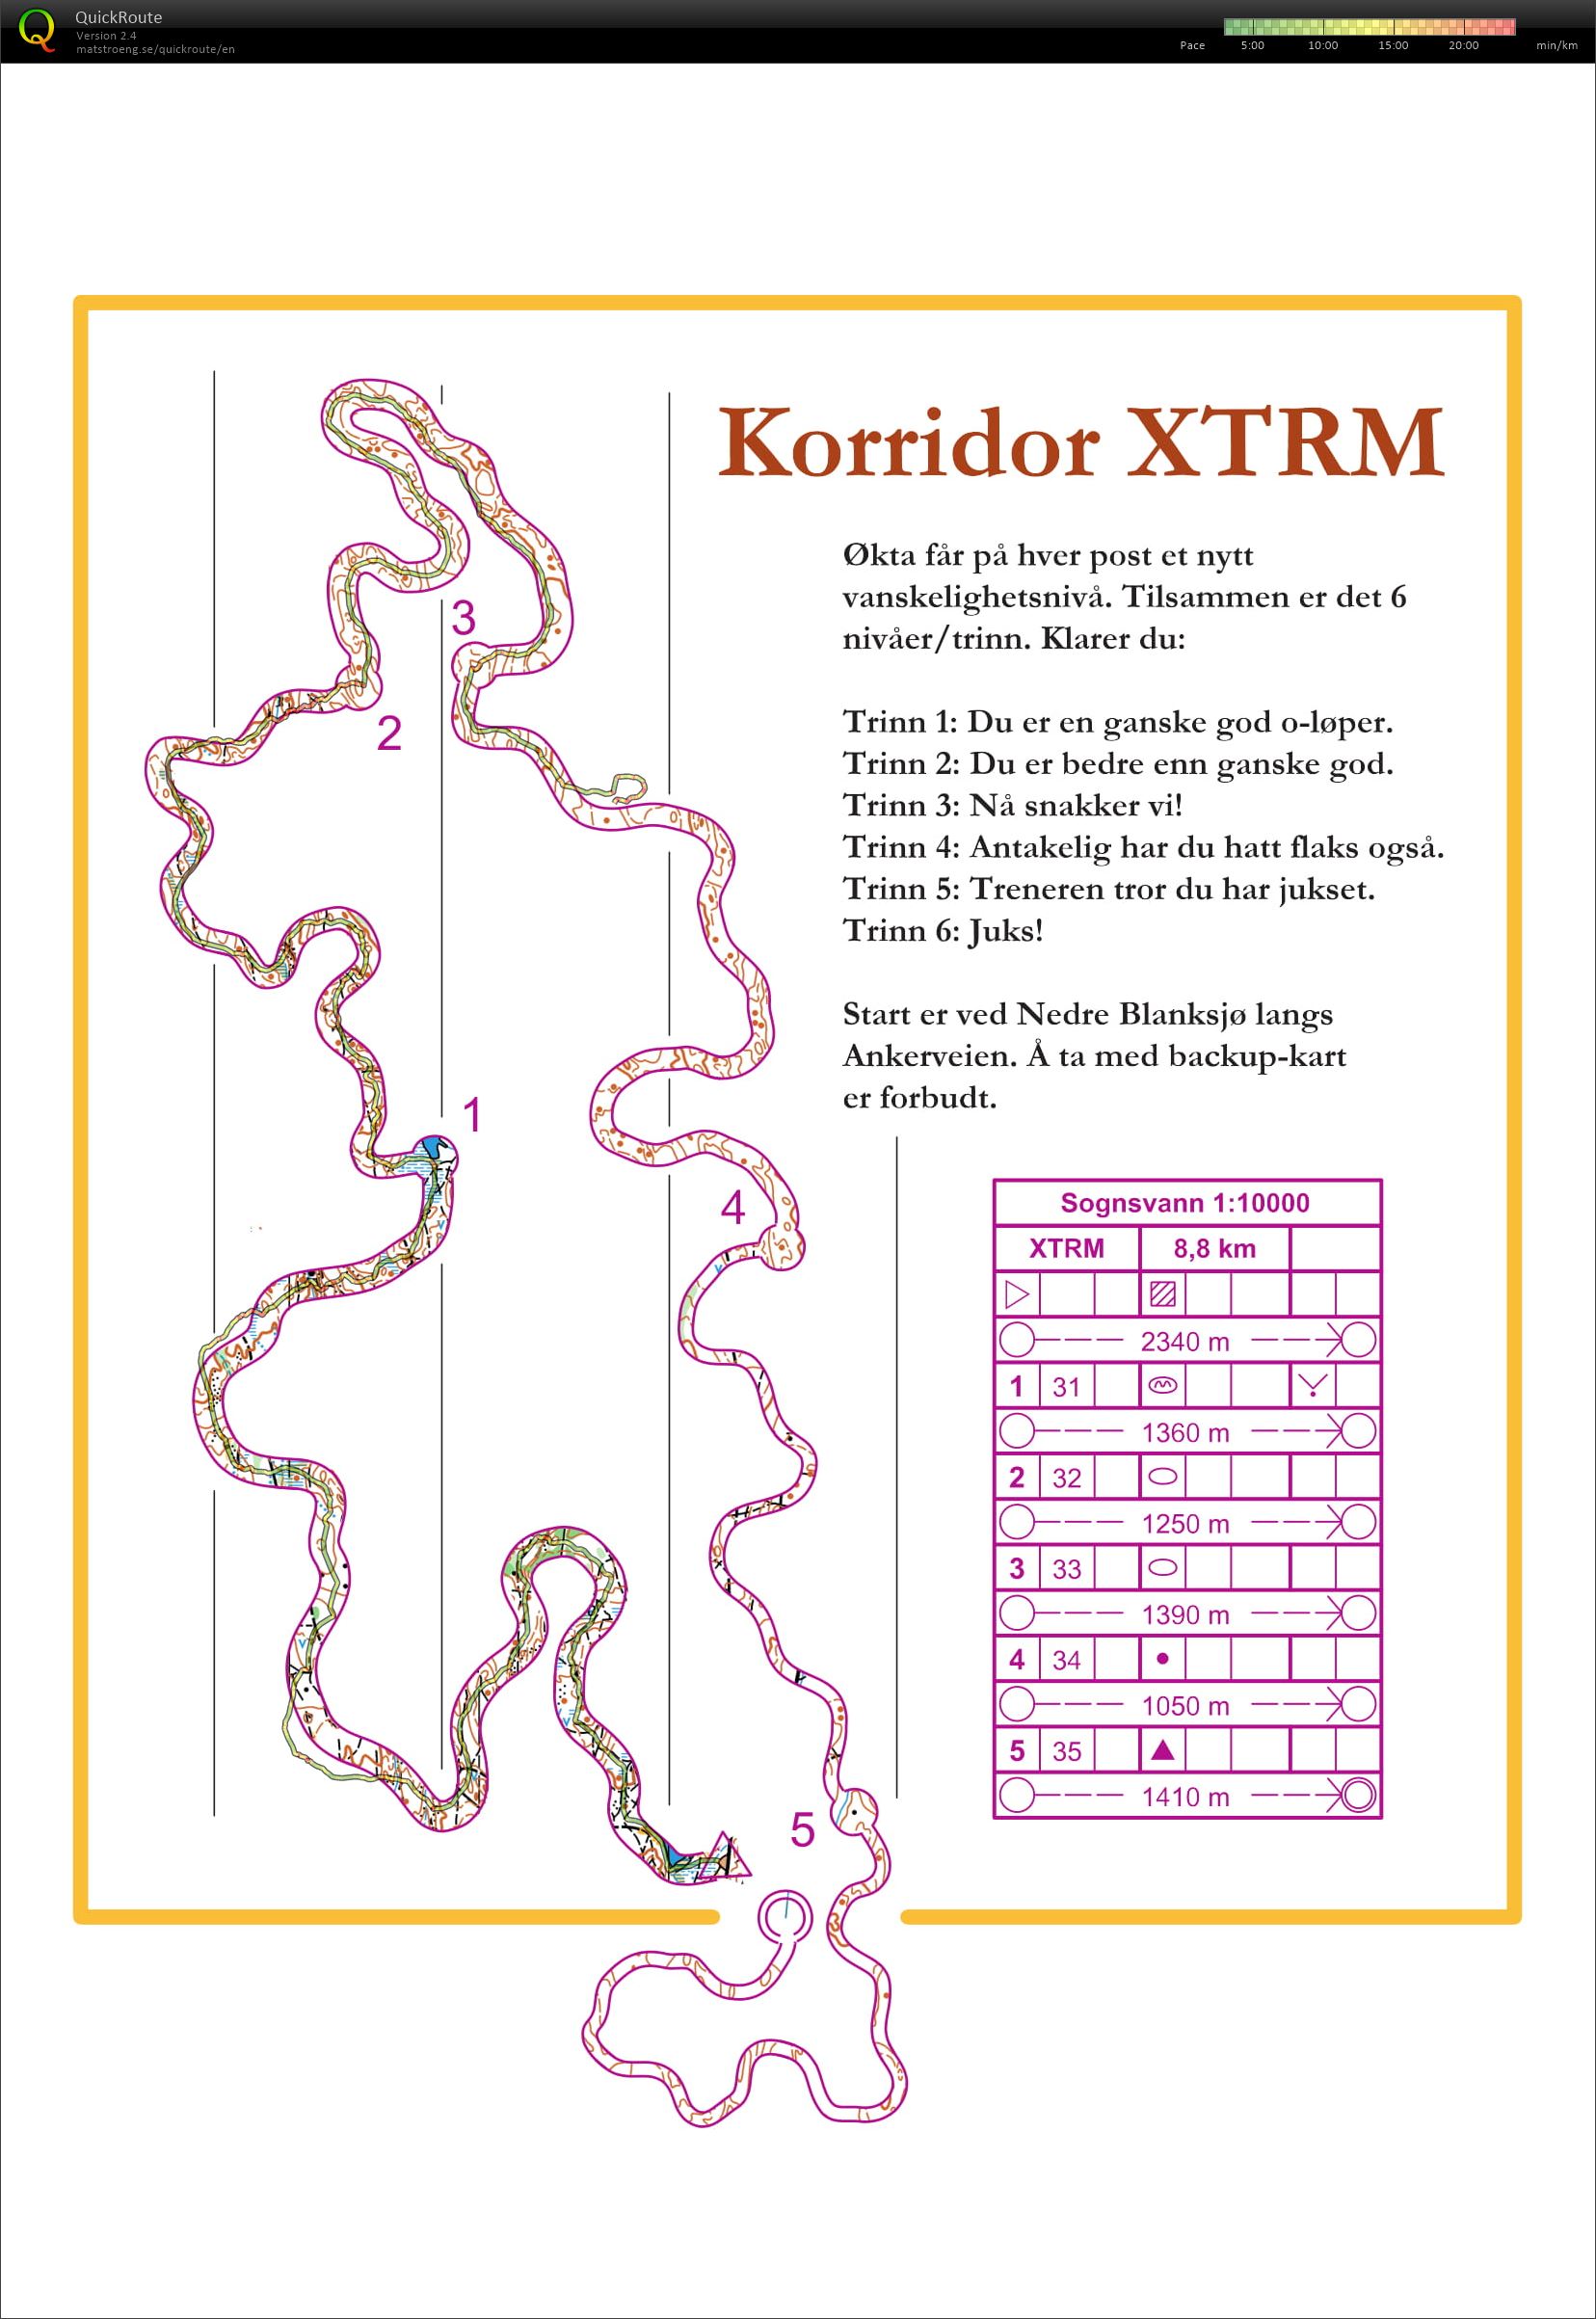 XTRM coridor (07/06/2018)